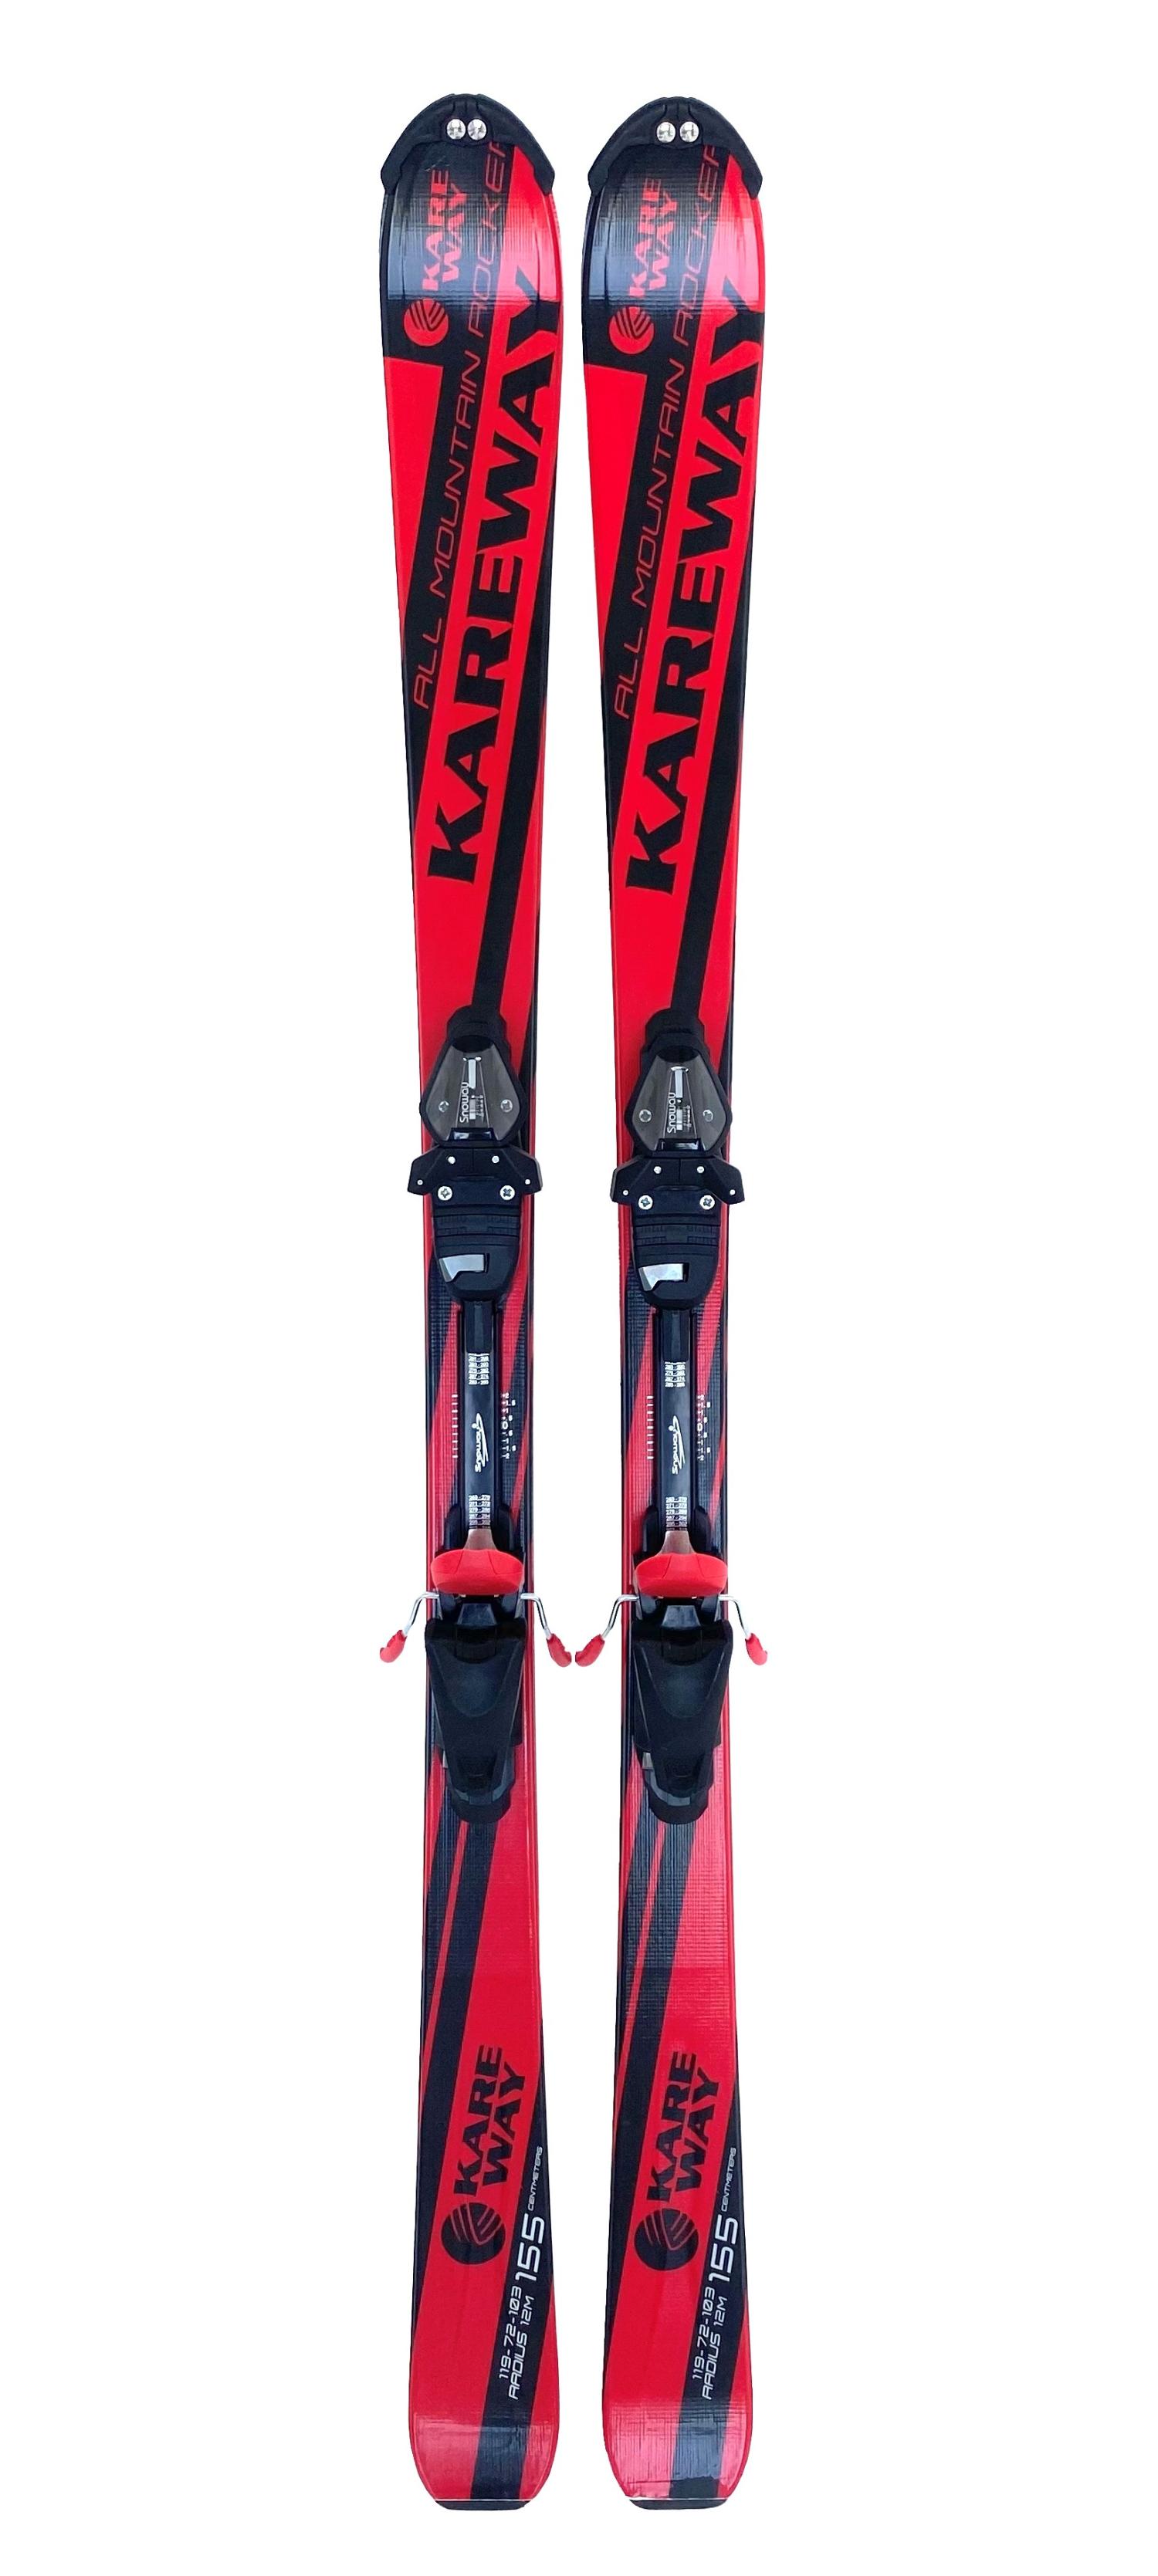 Горные лыжи с креплениями Lightning Kareway Black/Red + кр. Snoway SX 10 дата кабель more choice k14i tpe 2 0a lightning 8 pin black usb 0 25m